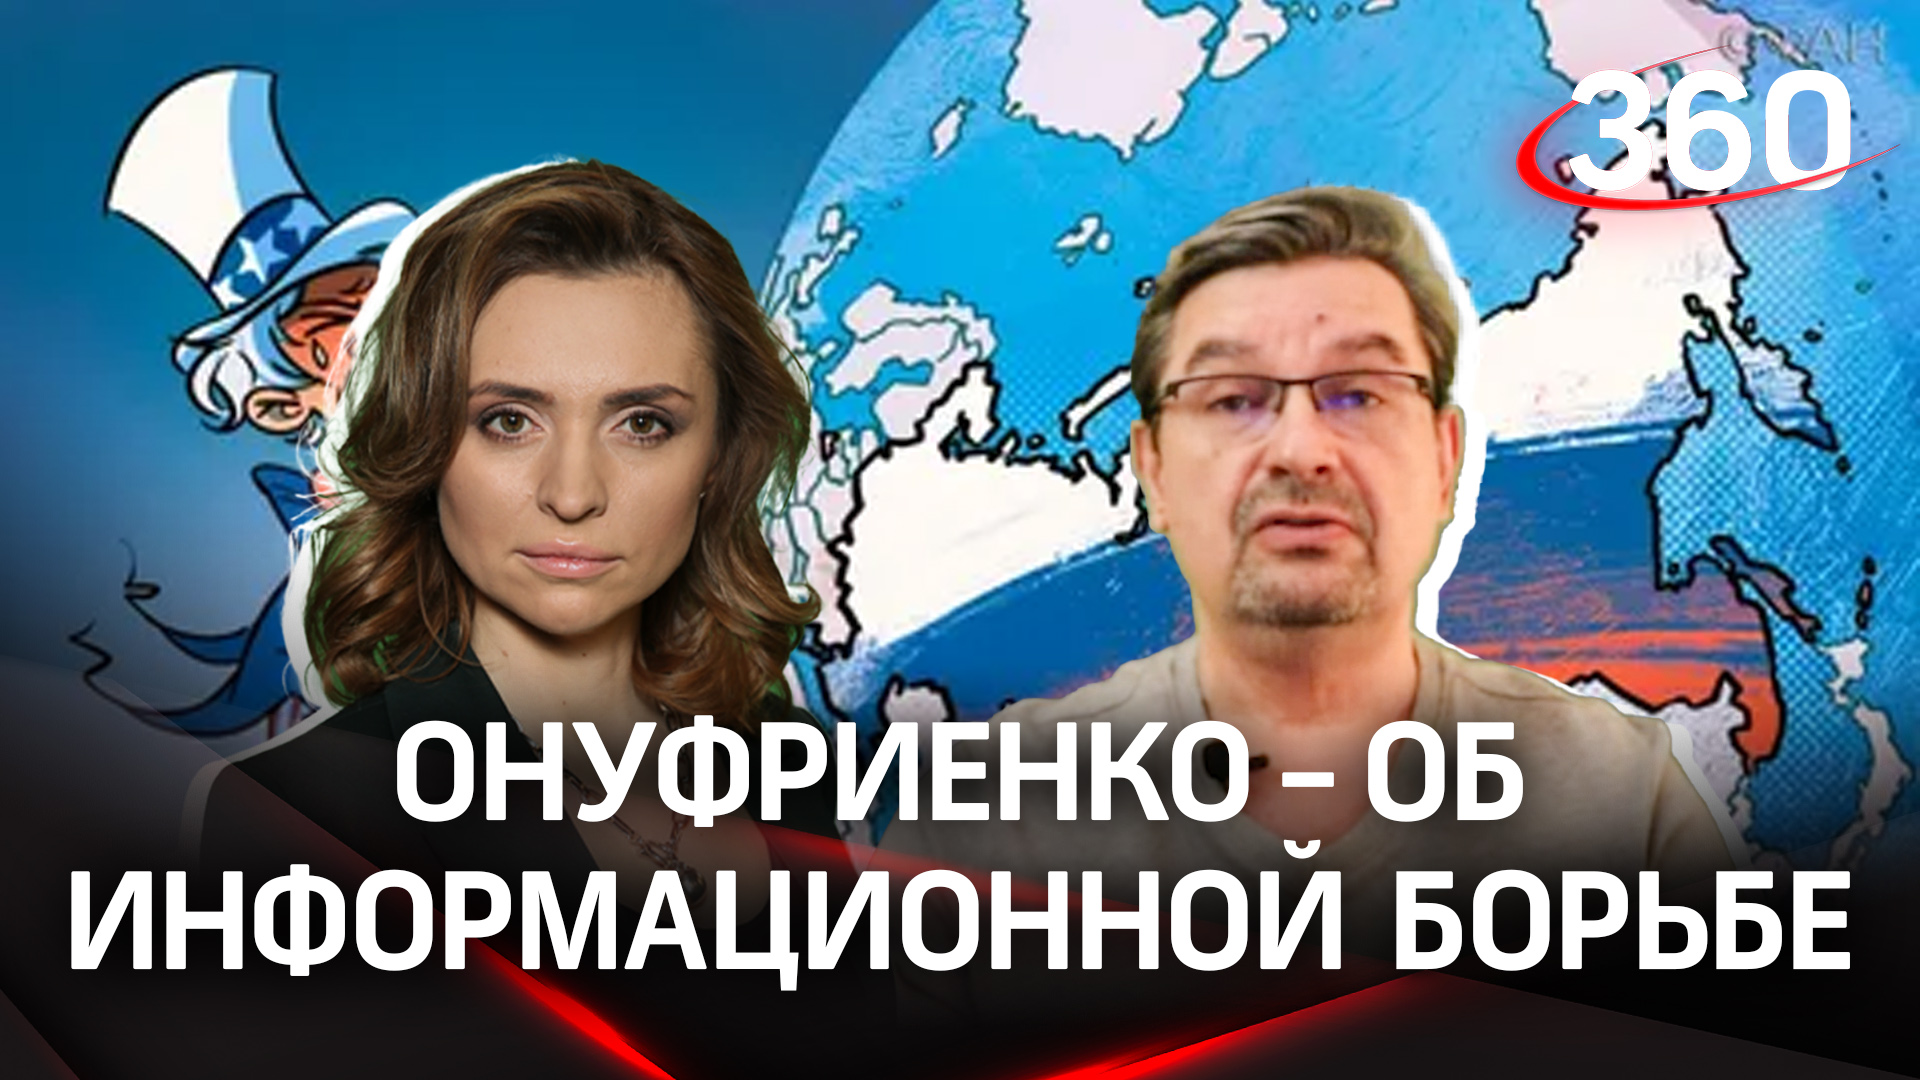 Онуфриенко: «Контролирут процесс люди, далекие от информационной политики»|Об информационной борьбе